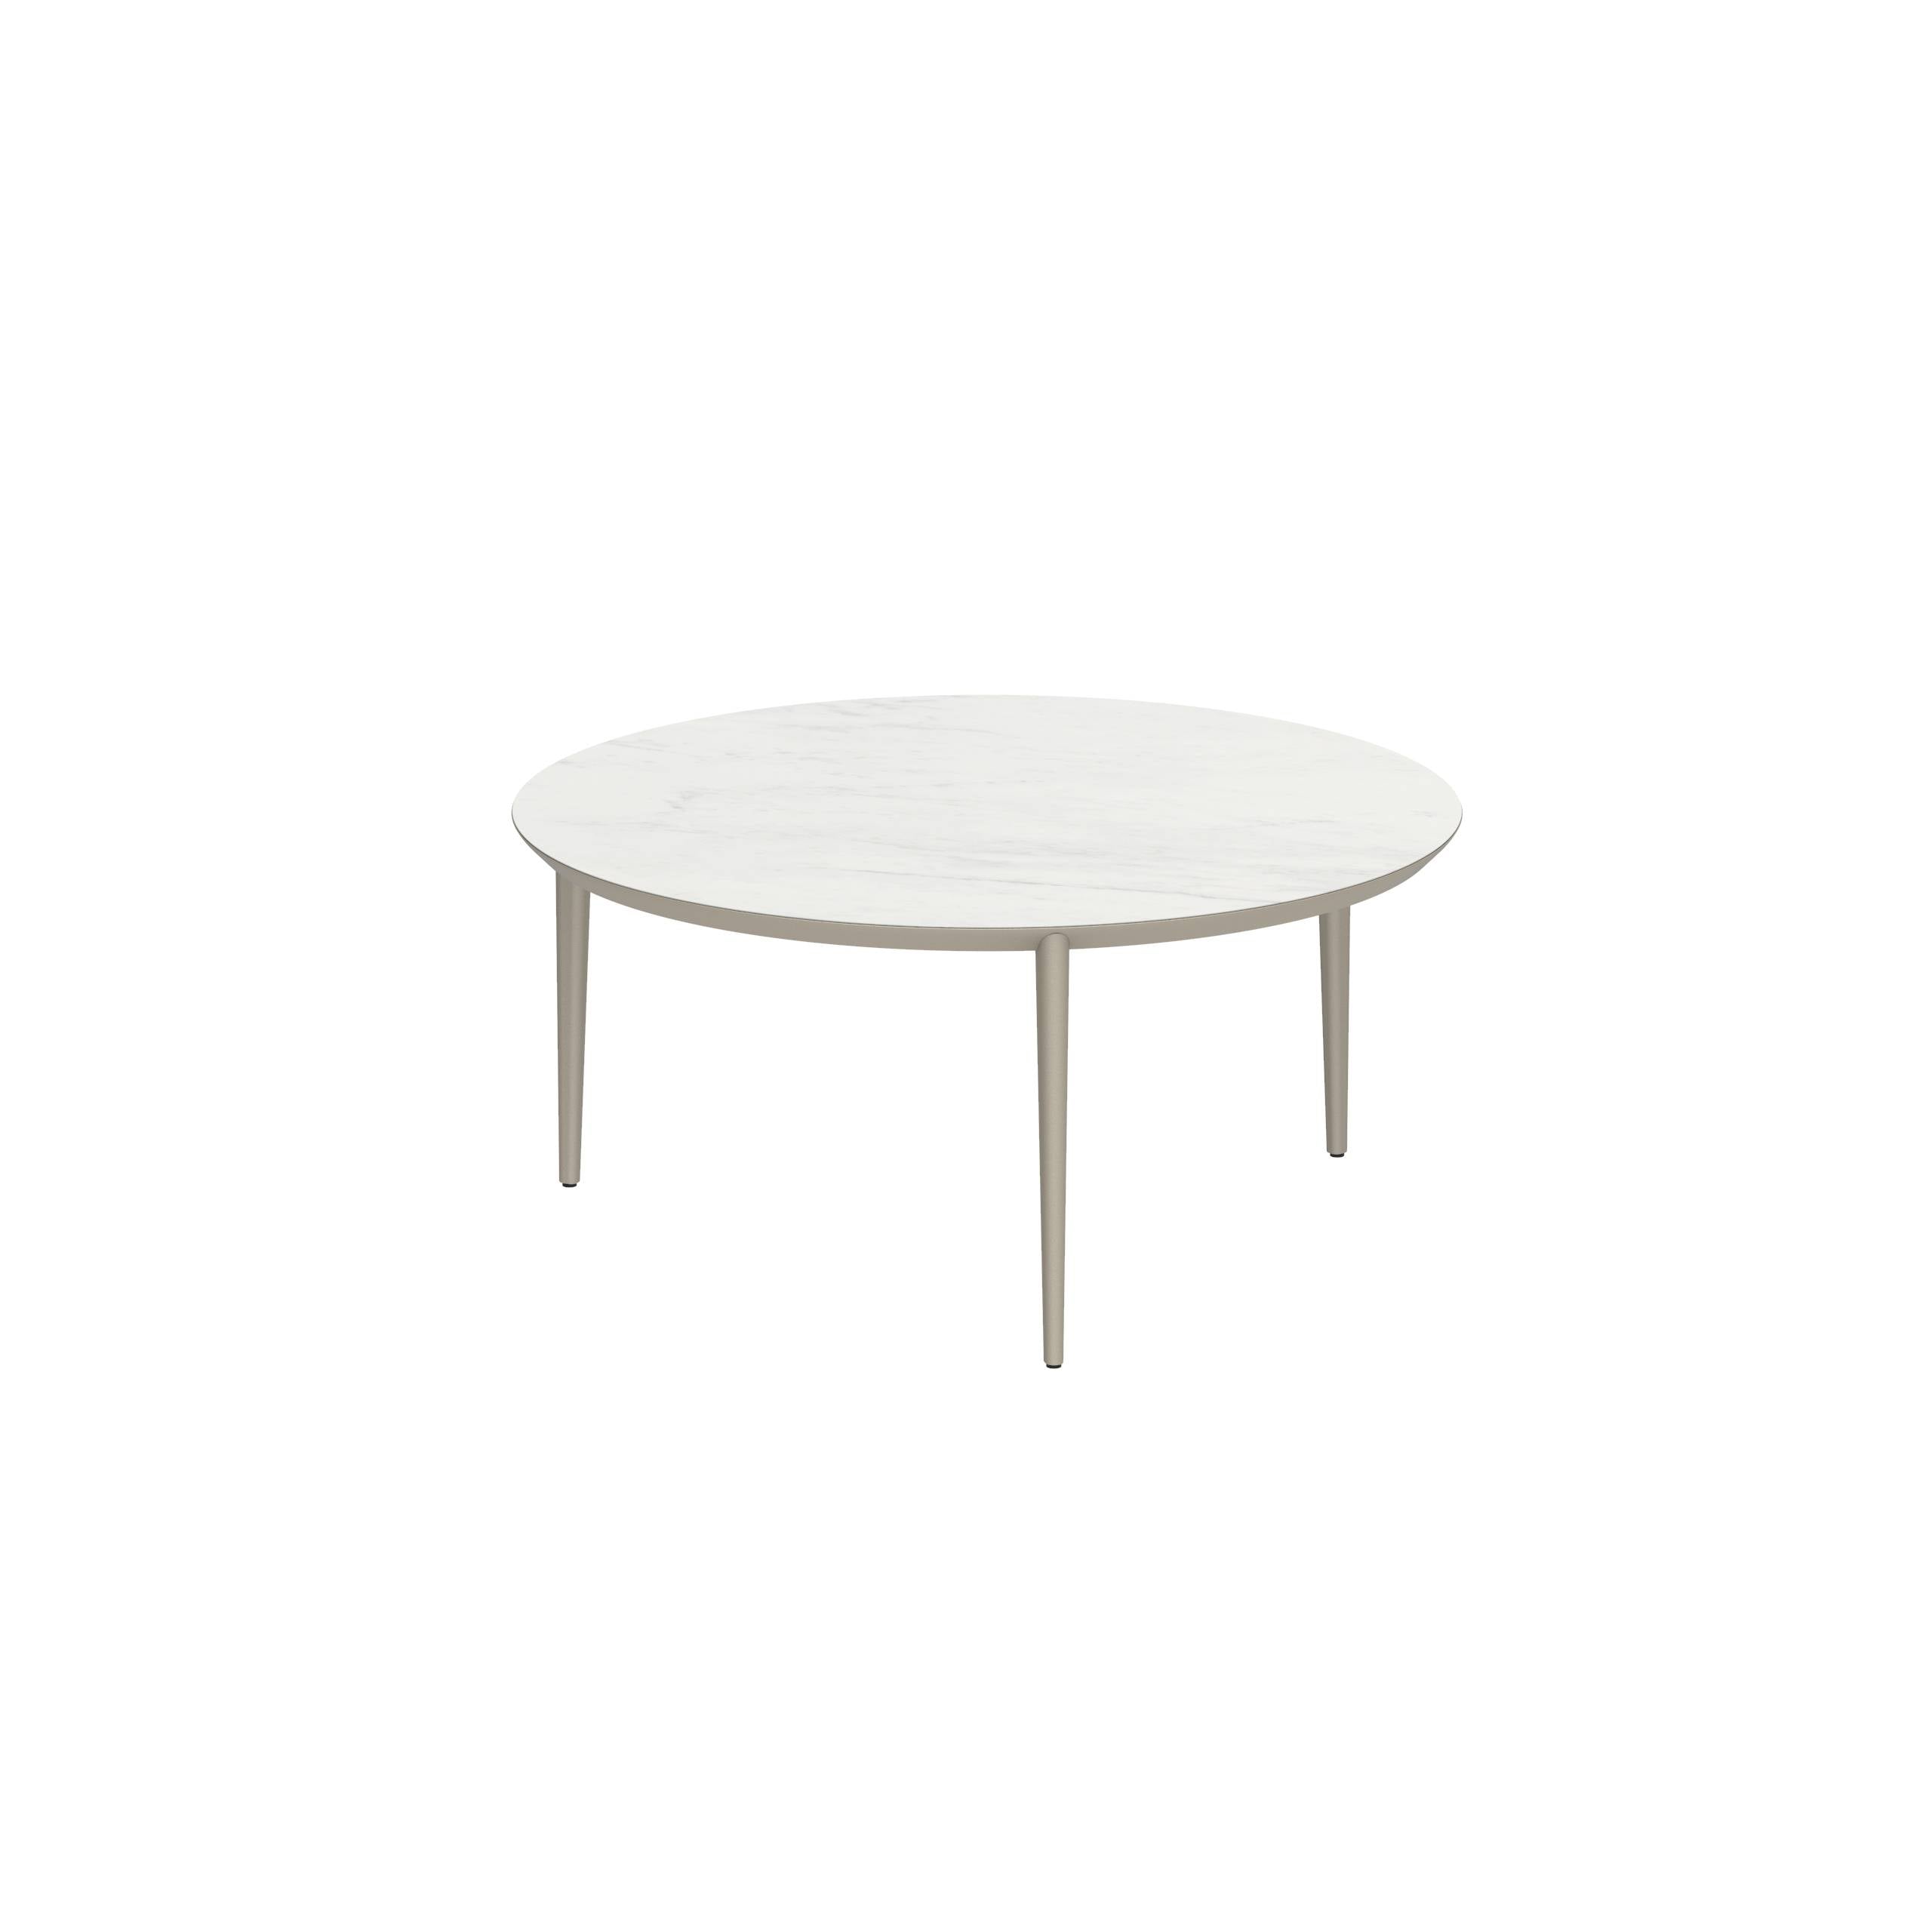 U-Nite Table Round Ø 160cm Alu Legs Sand - Table Top Ceramic Bianco Statuario